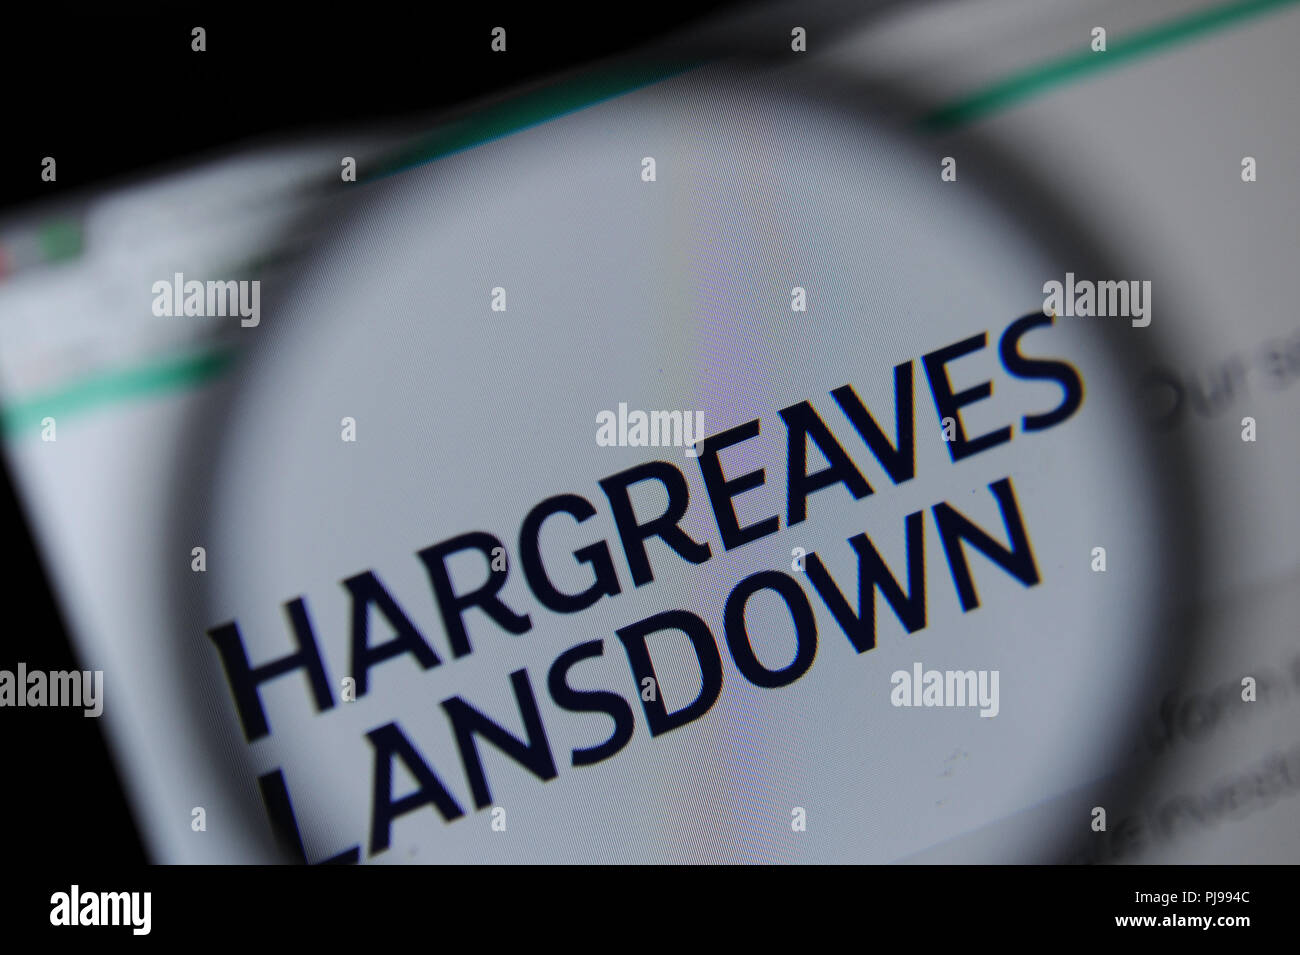 Le site web de Landsdowne Hargreaves vu à travers une loupe Banque D'Images